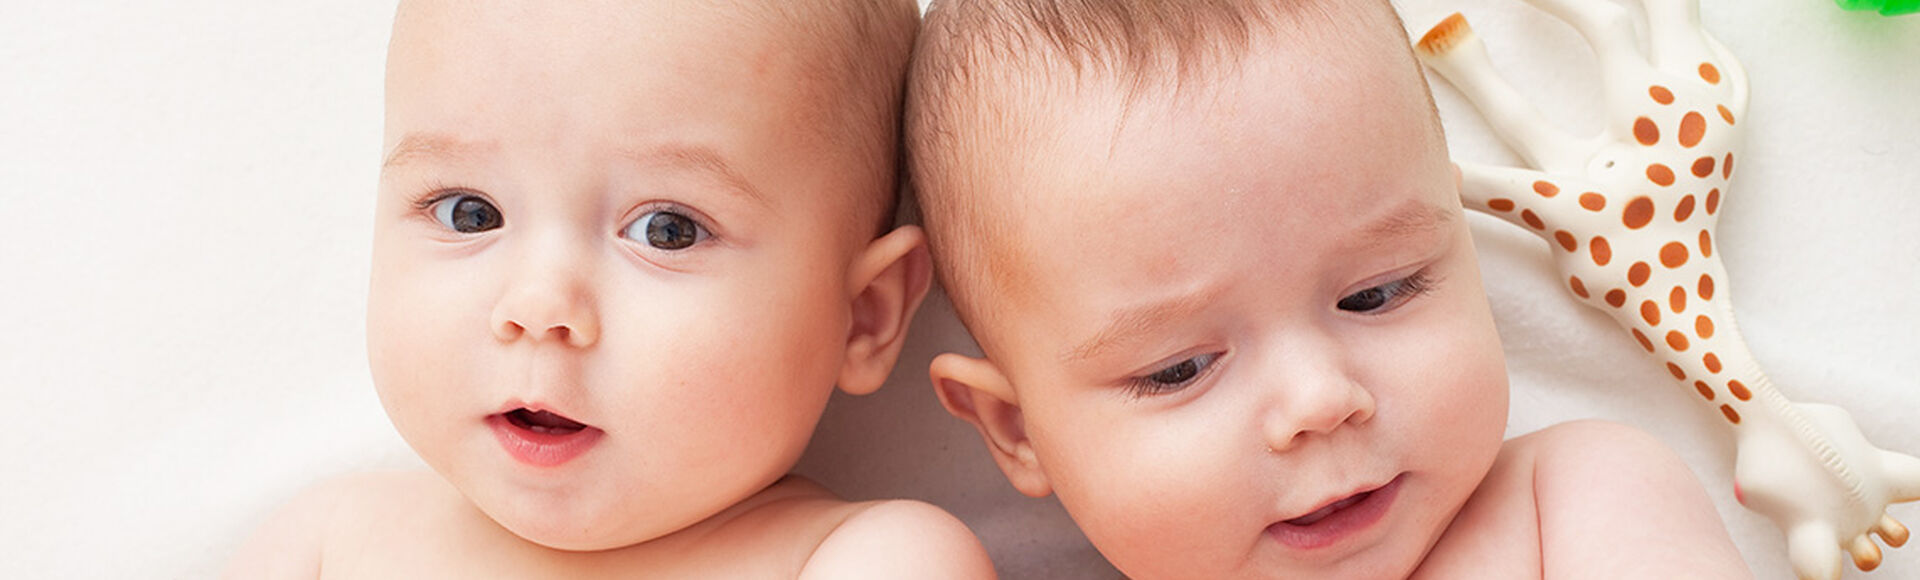 ¿Qué es un embarazo gemelar? | Más Abrazos by Huggies